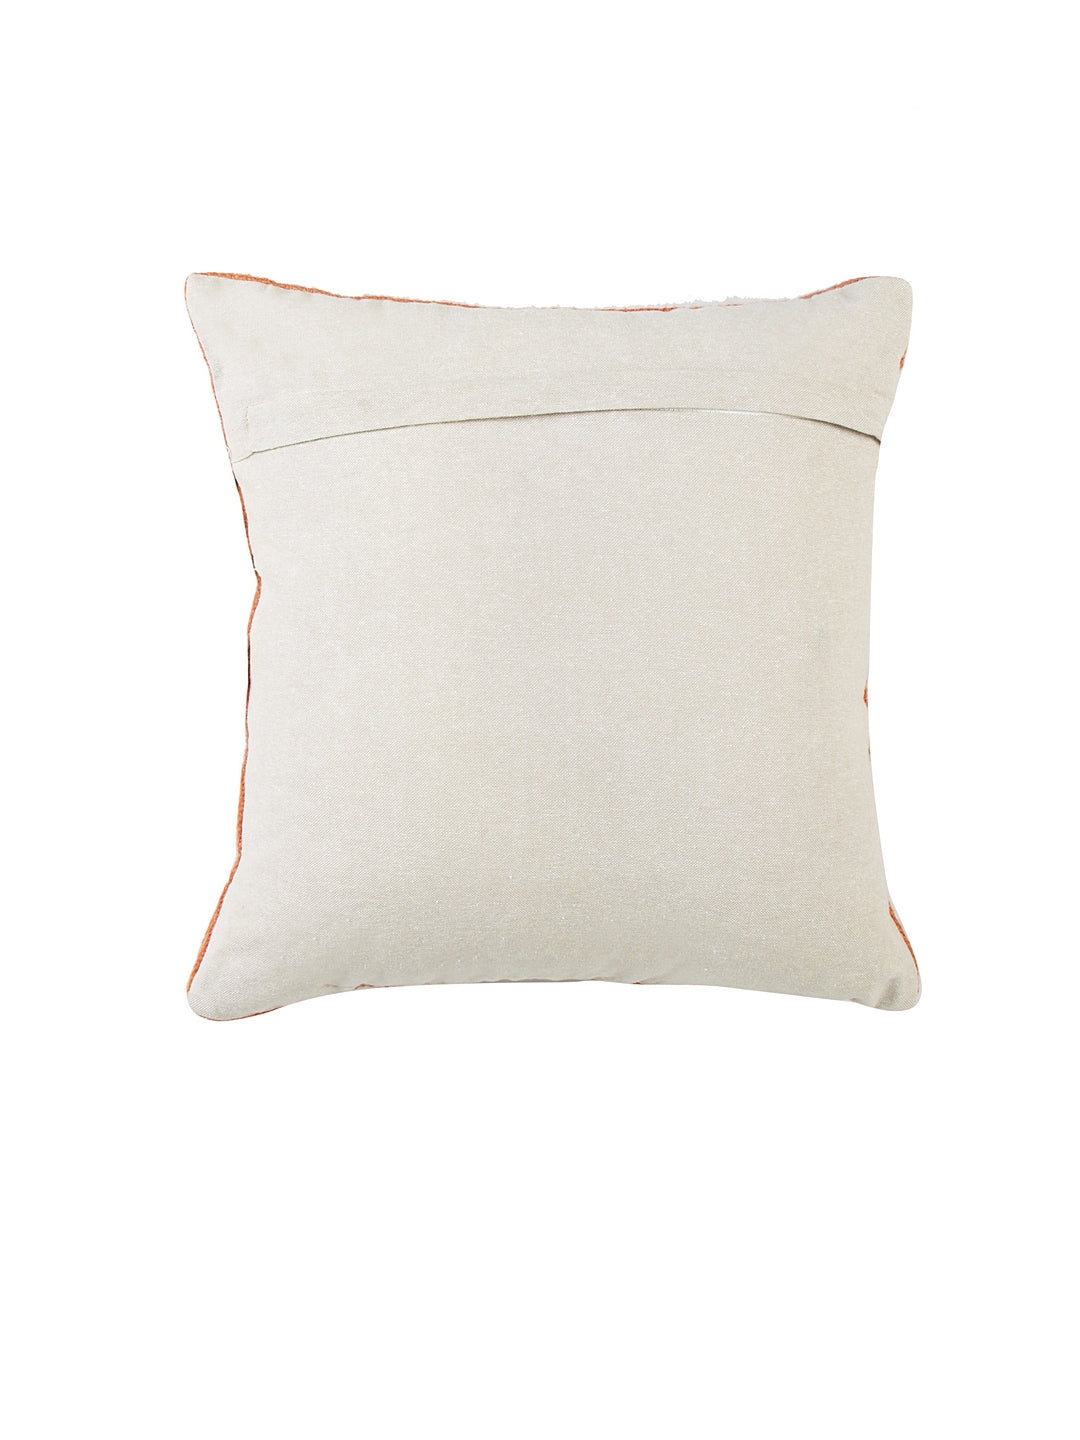 Blanc9 Trellis Terracotta Cushion Cover